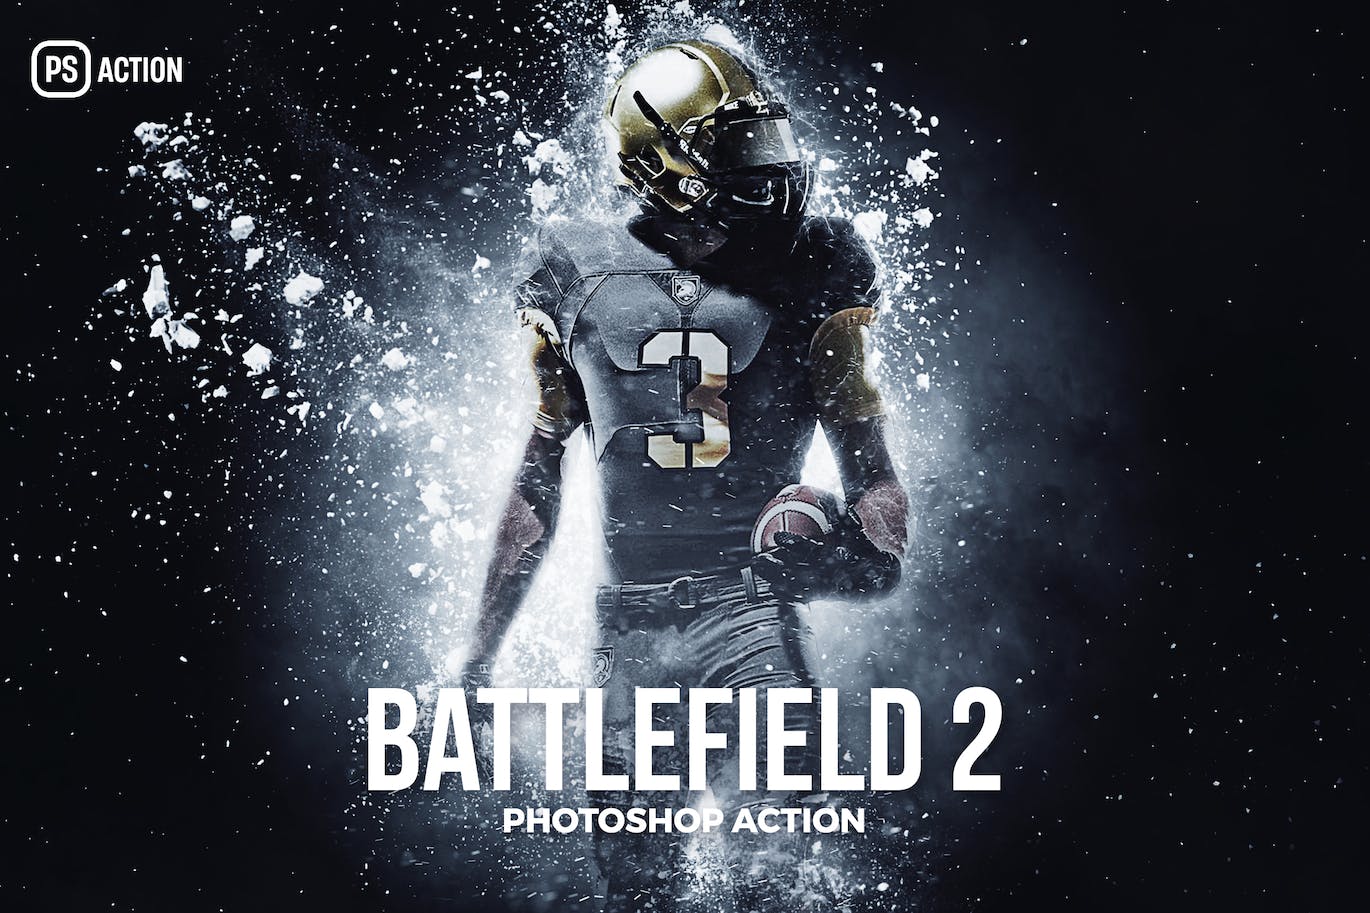 战场碎片效果照片处理Photoshop动作 The Battle field Photoshop Action 插件预设 第1张